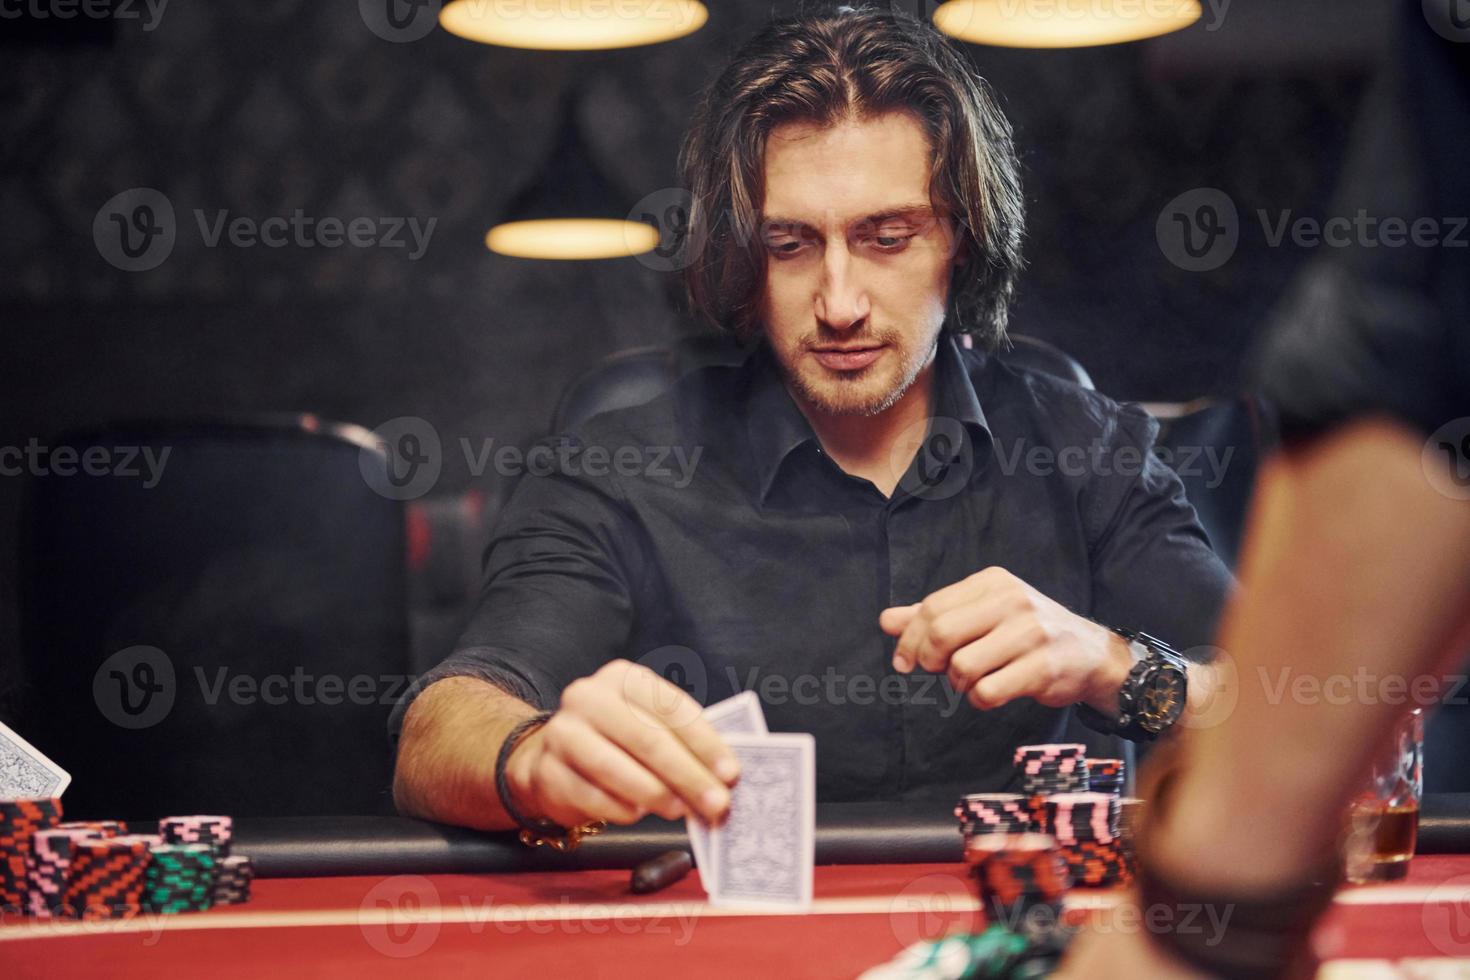 jovens elegantes se sentam à mesa e jogam pôquer no cassino com fumaça no ar foto